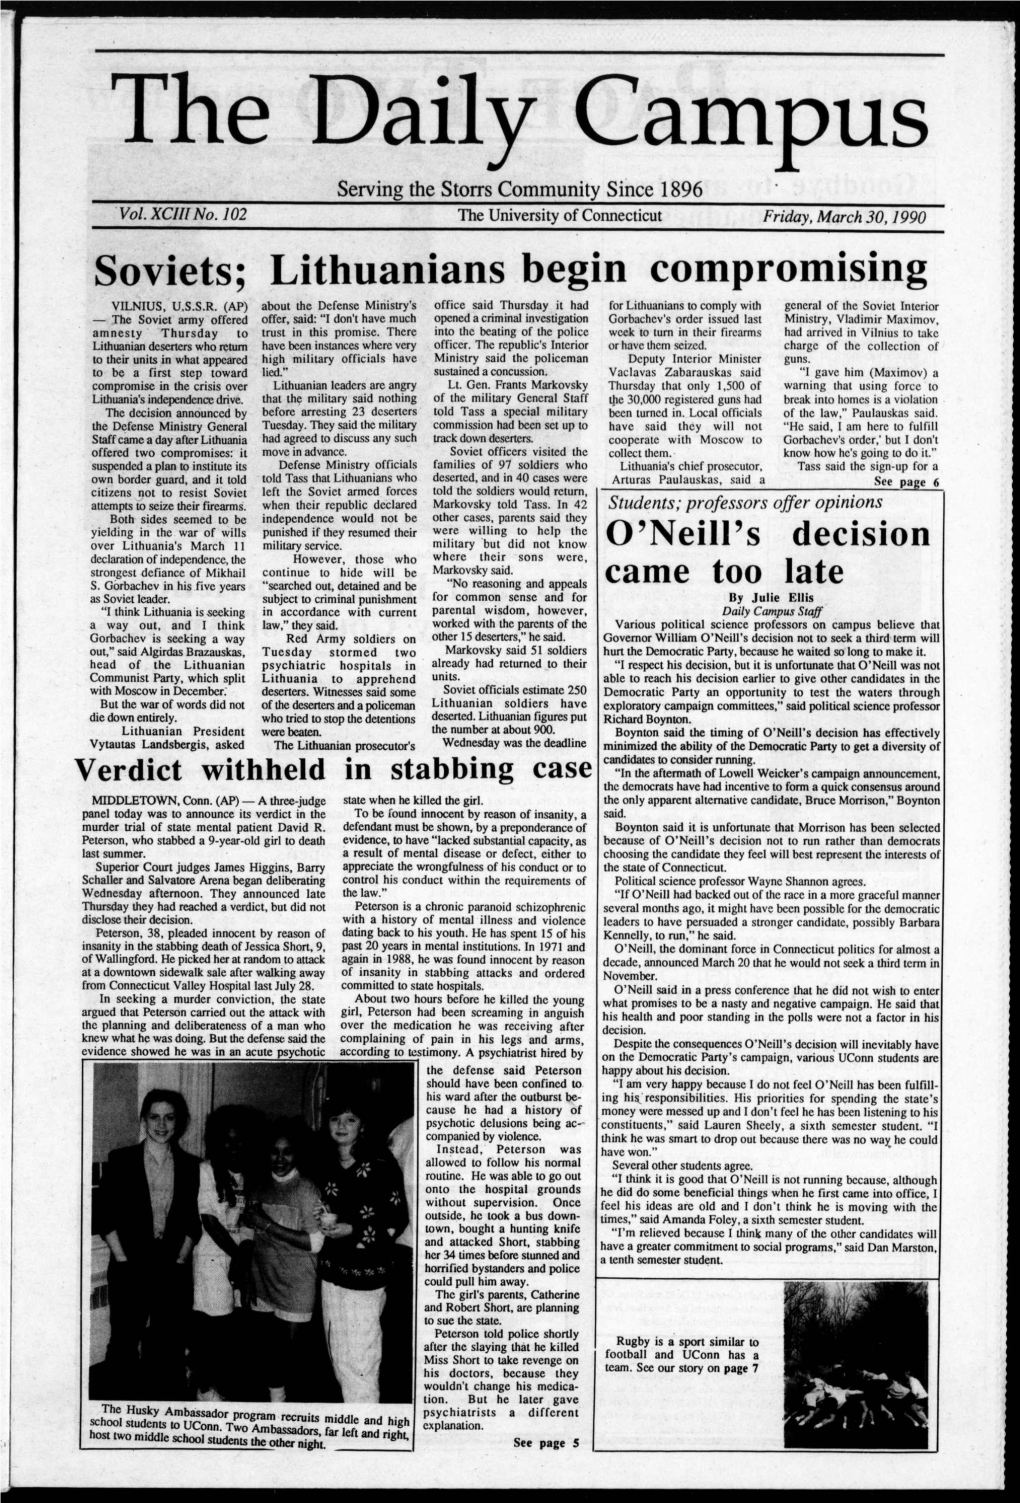 Lithuanians Begin Compromising VILNIUS, U.S.S.R